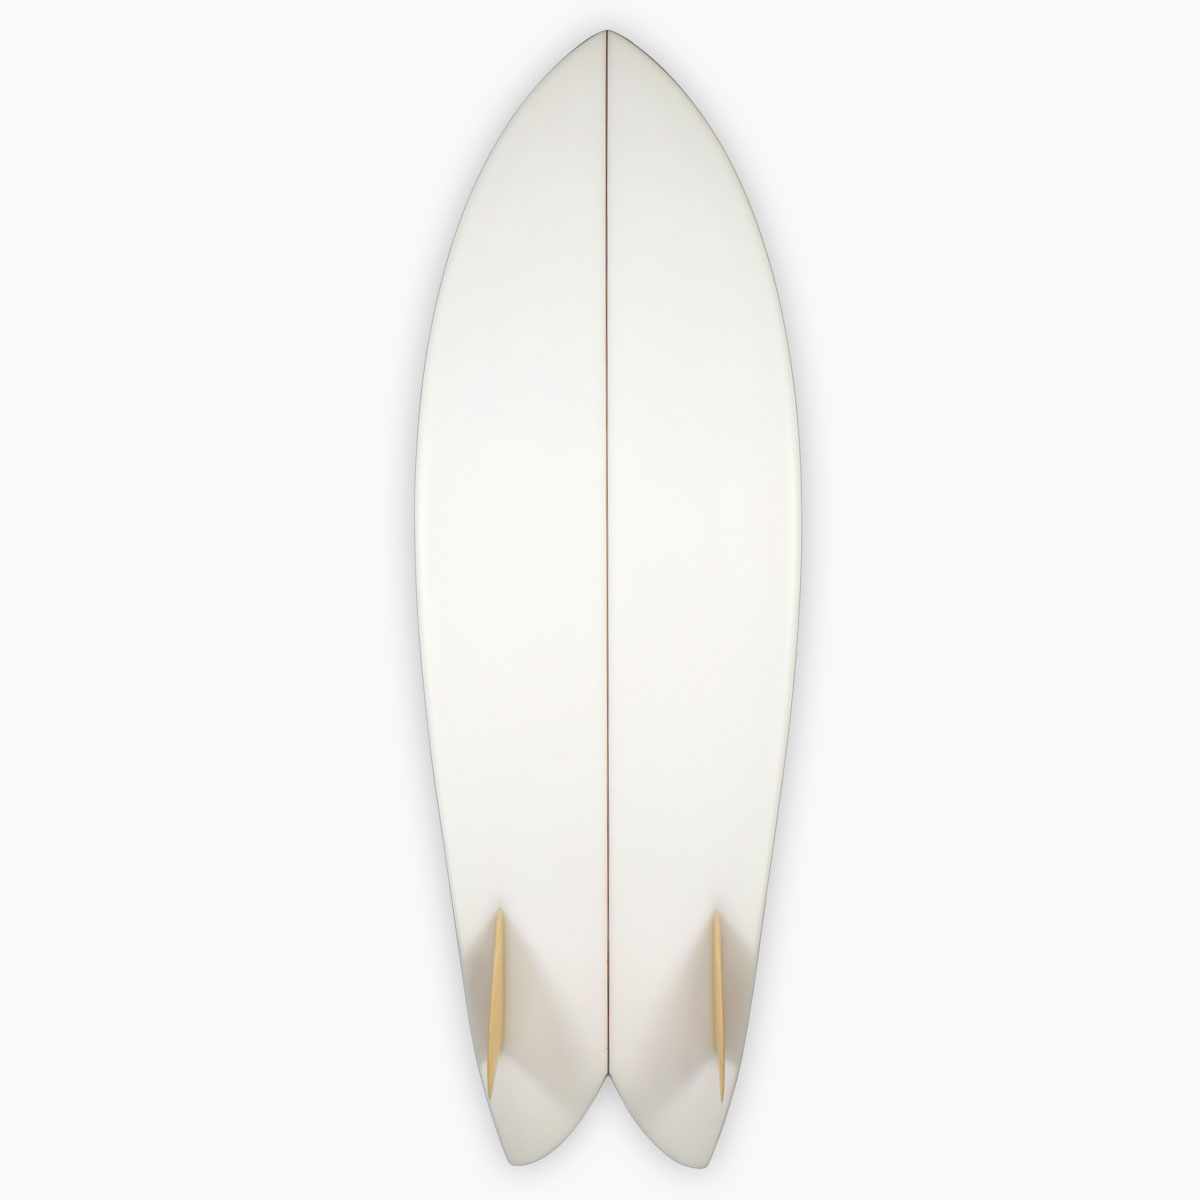 SurfBoardNet / ブランド:RYAN BURCH モデル:SQUIT FISH